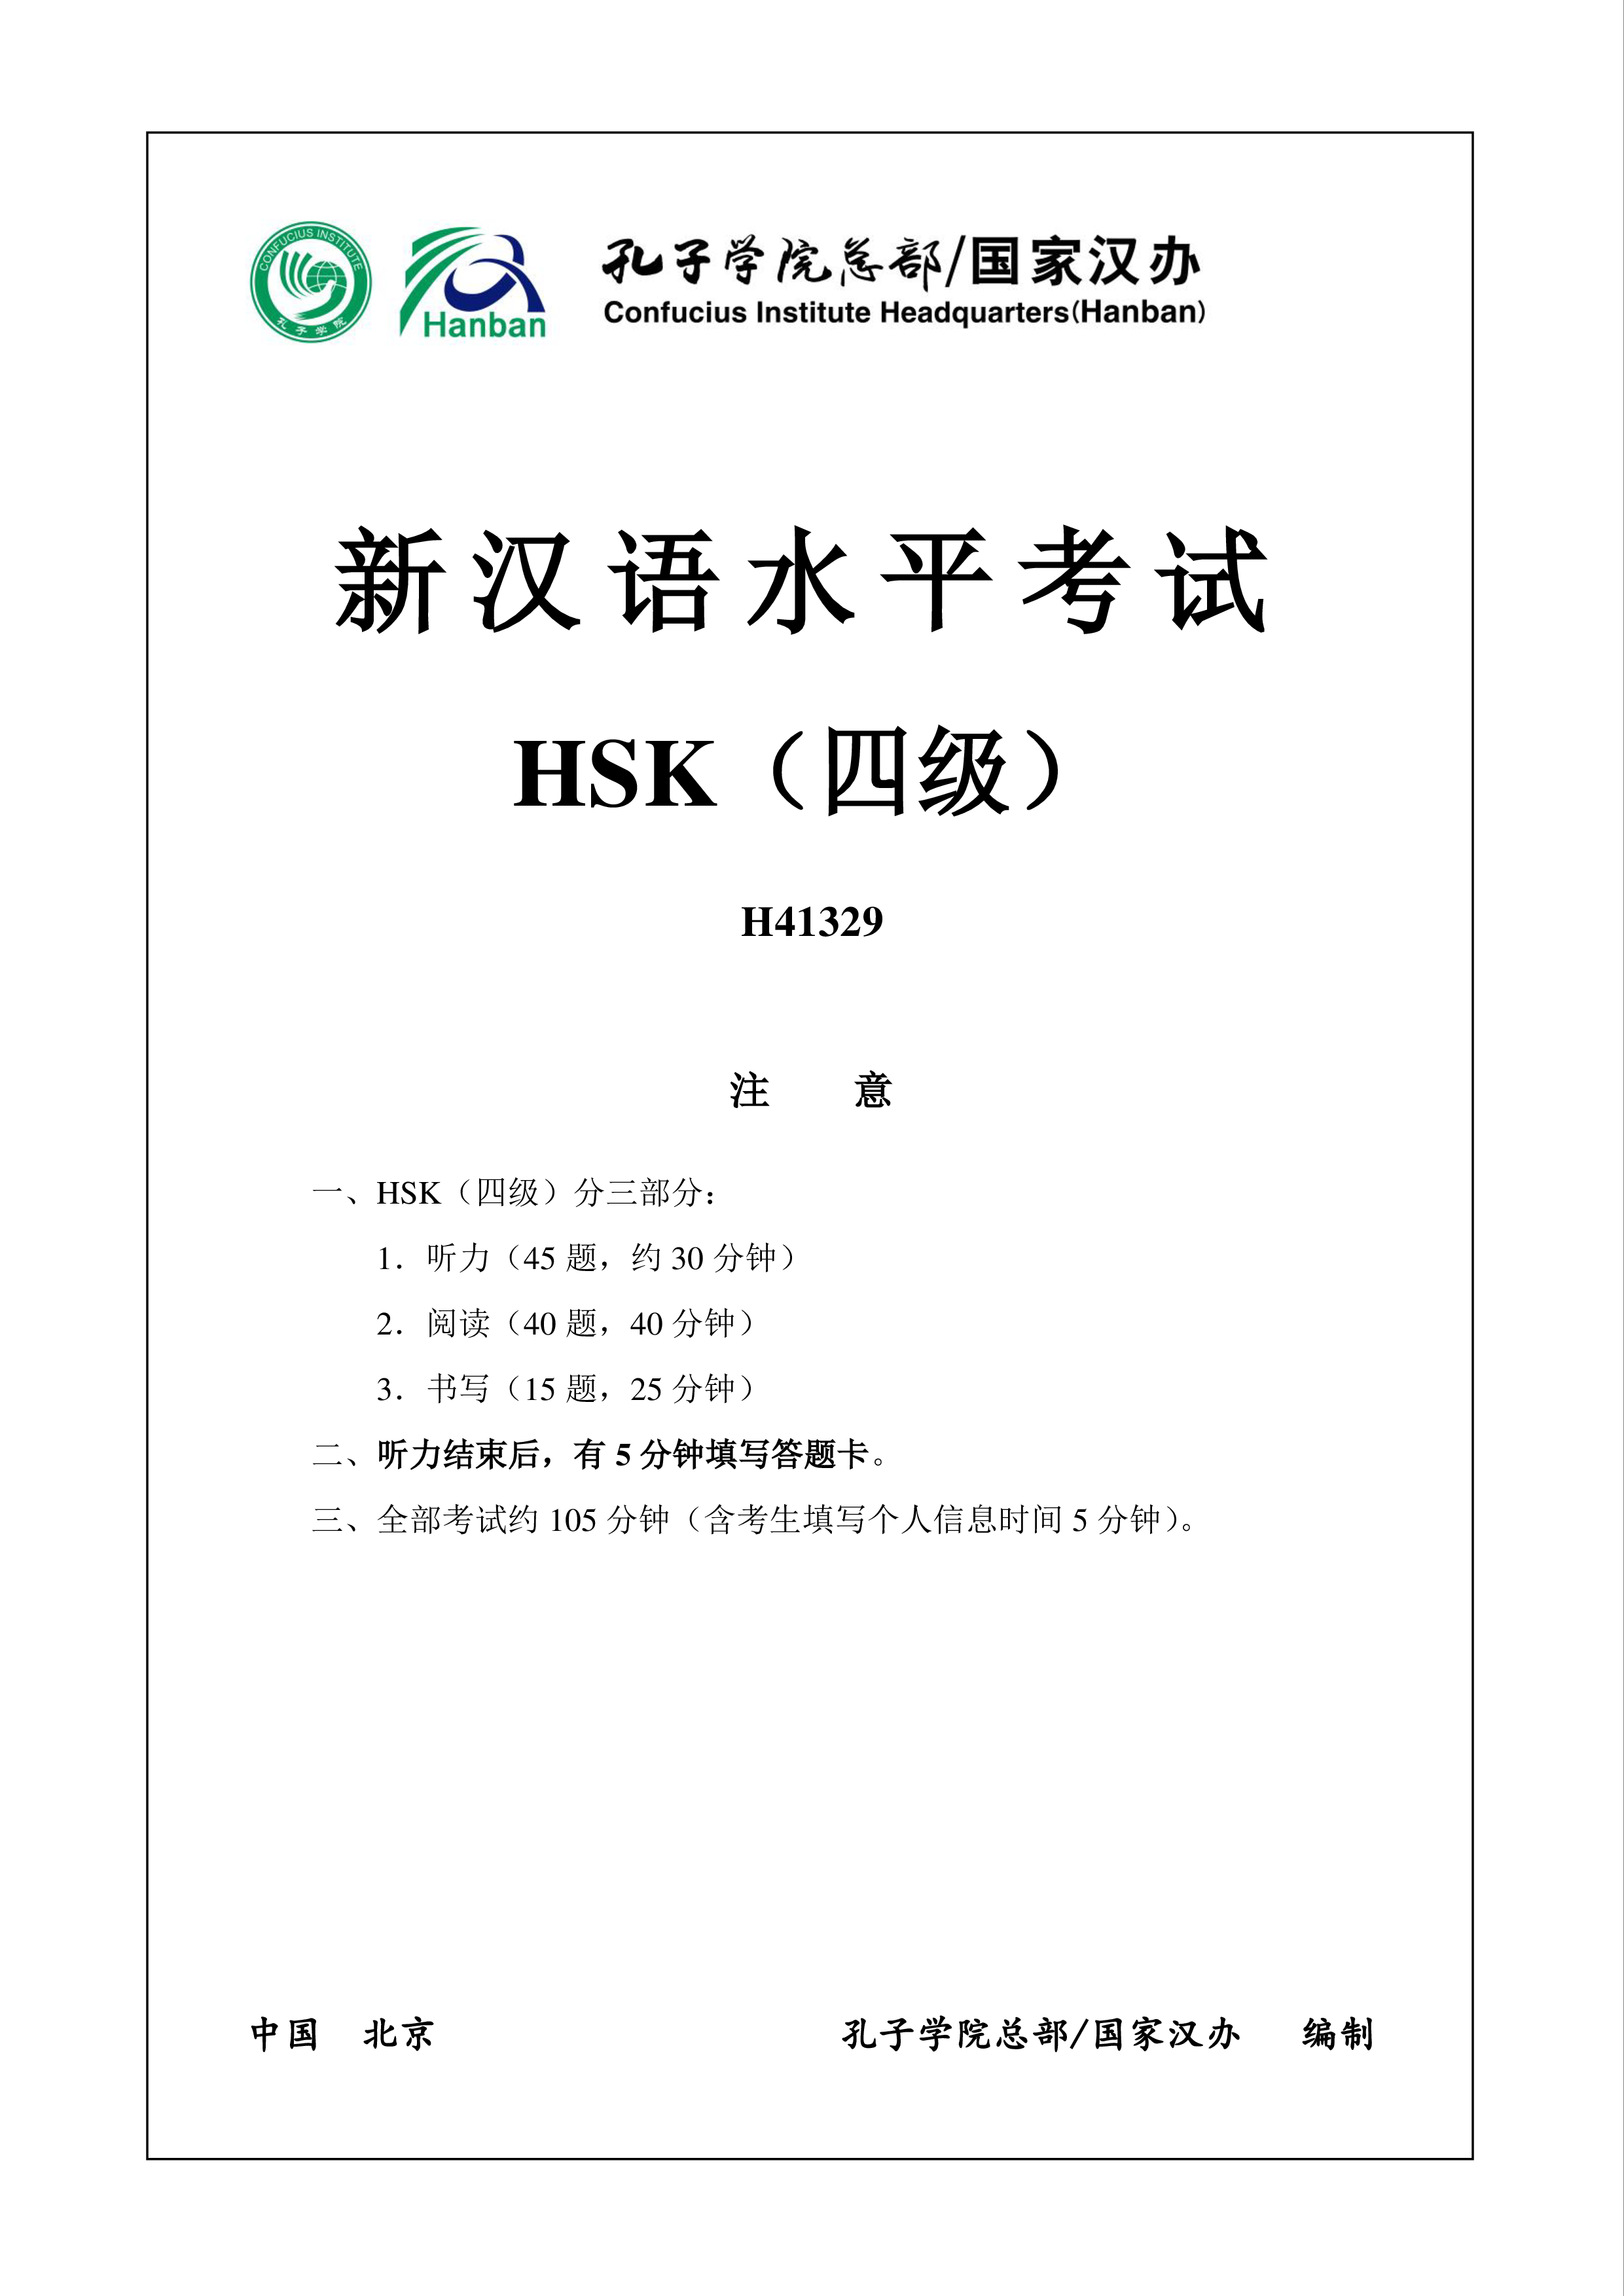 hsk4 chinees examen h41329 plantilla imagen principal